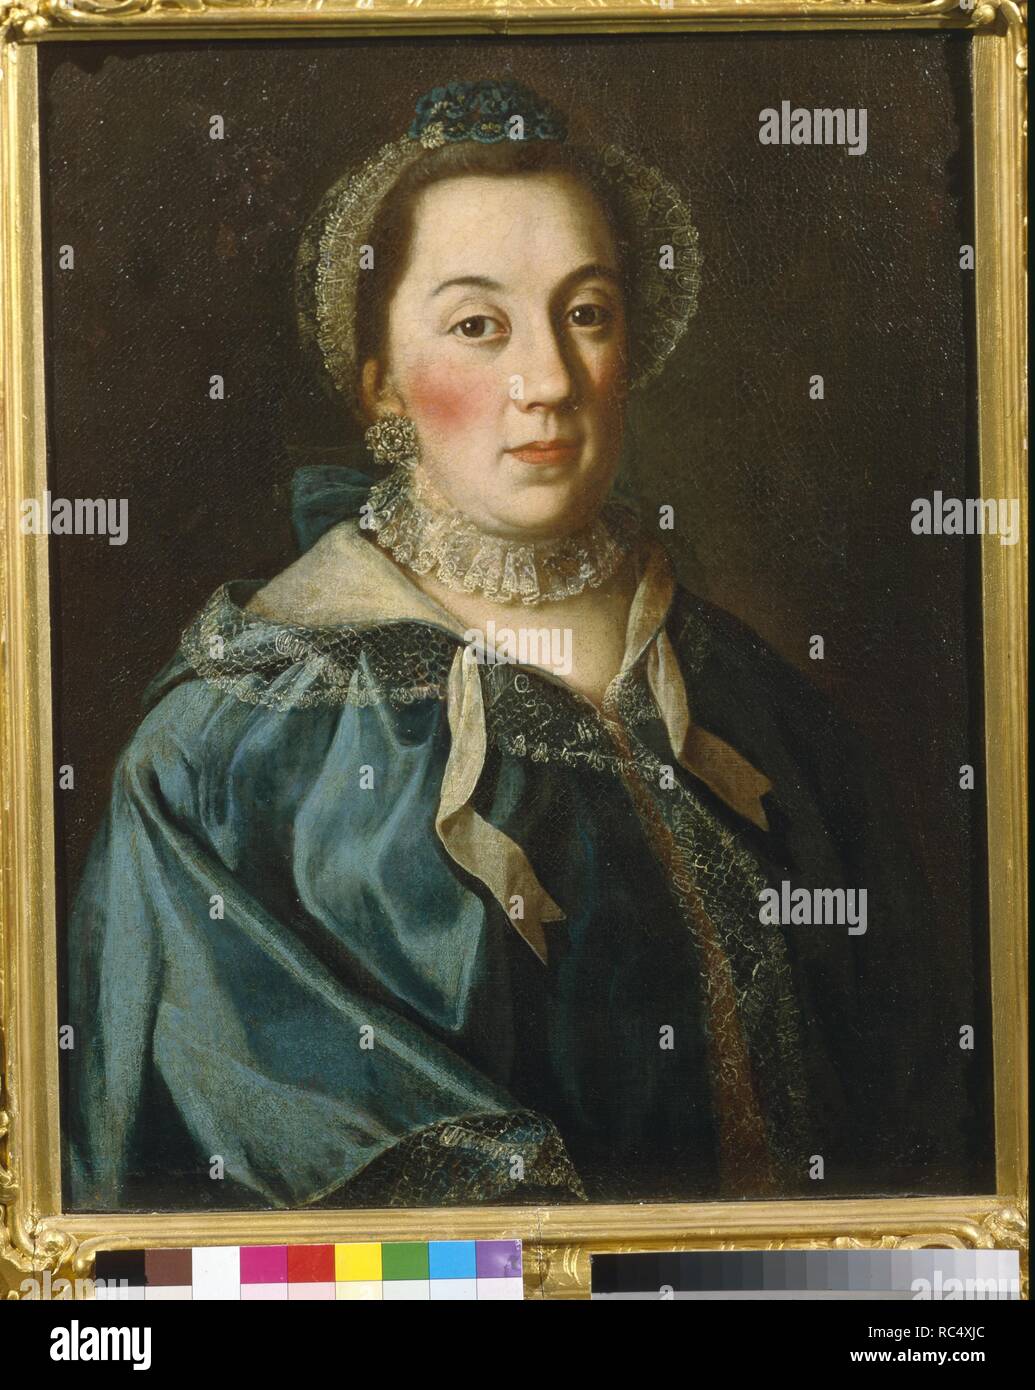 Portrait de la Comtesse Yelizaveta Franzevna Buturliina. Musée : Musée d'histoire de l'État de Moscou. Auteur : ANTROPOV, Alexei Petrovitch. Banque D'Images